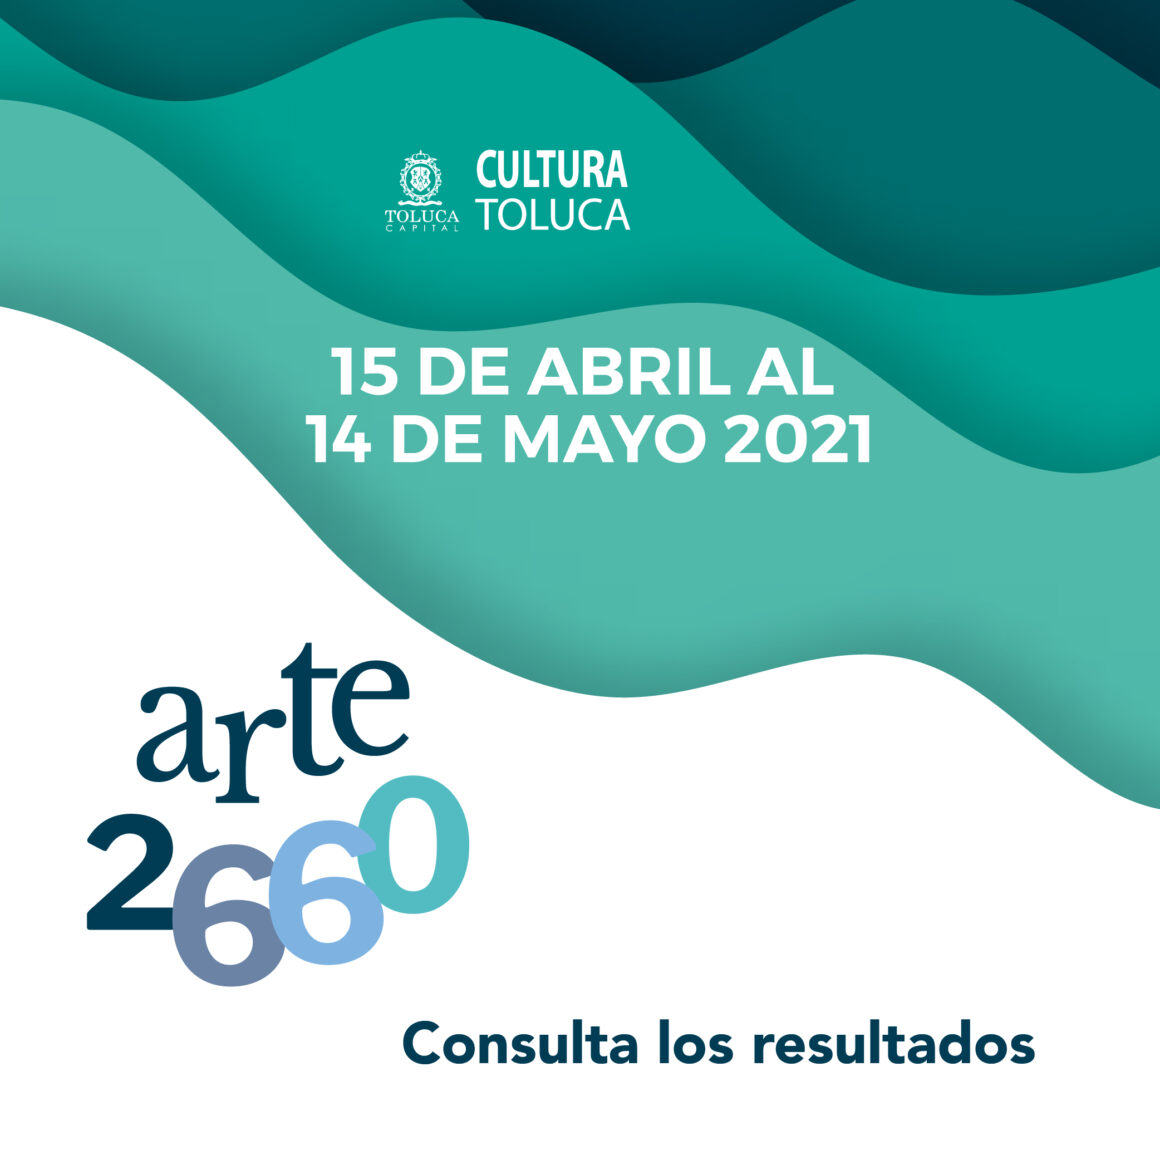 Iniciativa de Toluca Arte 2660, con una exitosa convocatoria de artistas